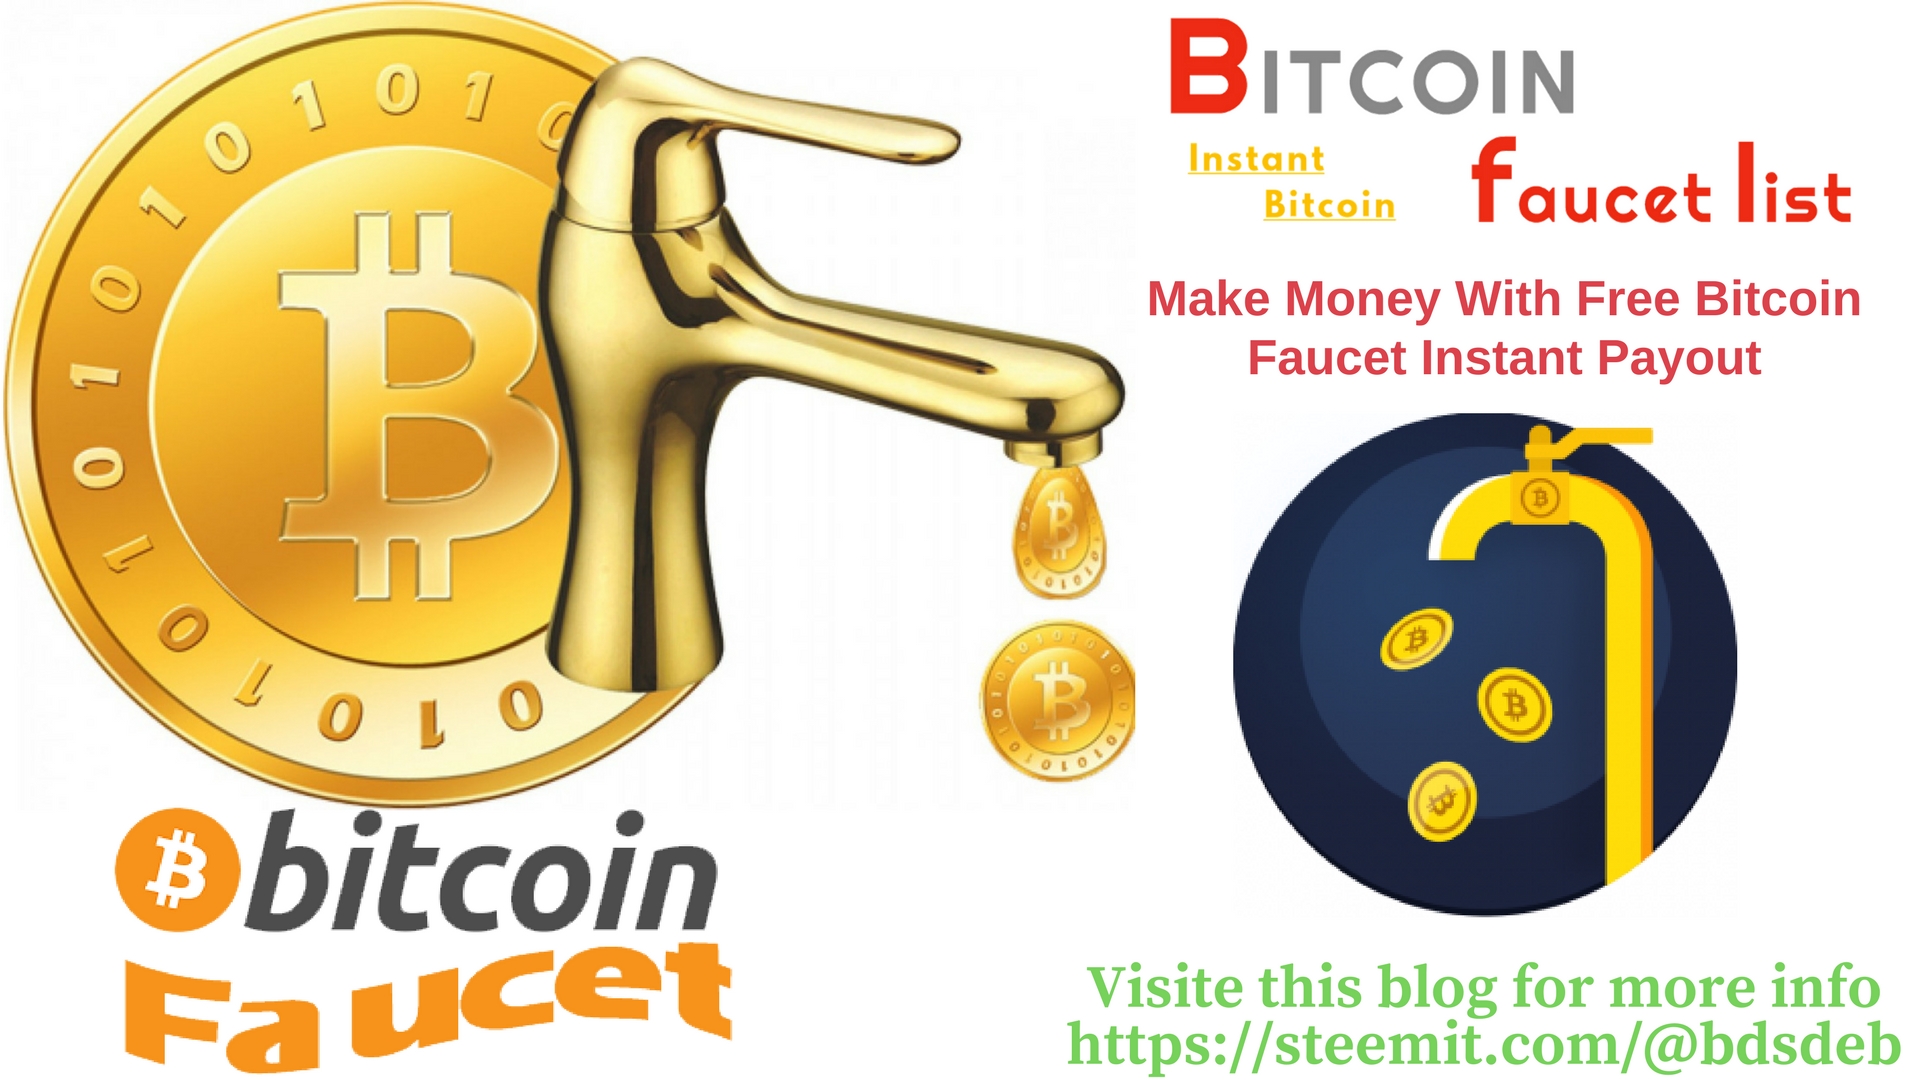 bitcoin faucet app